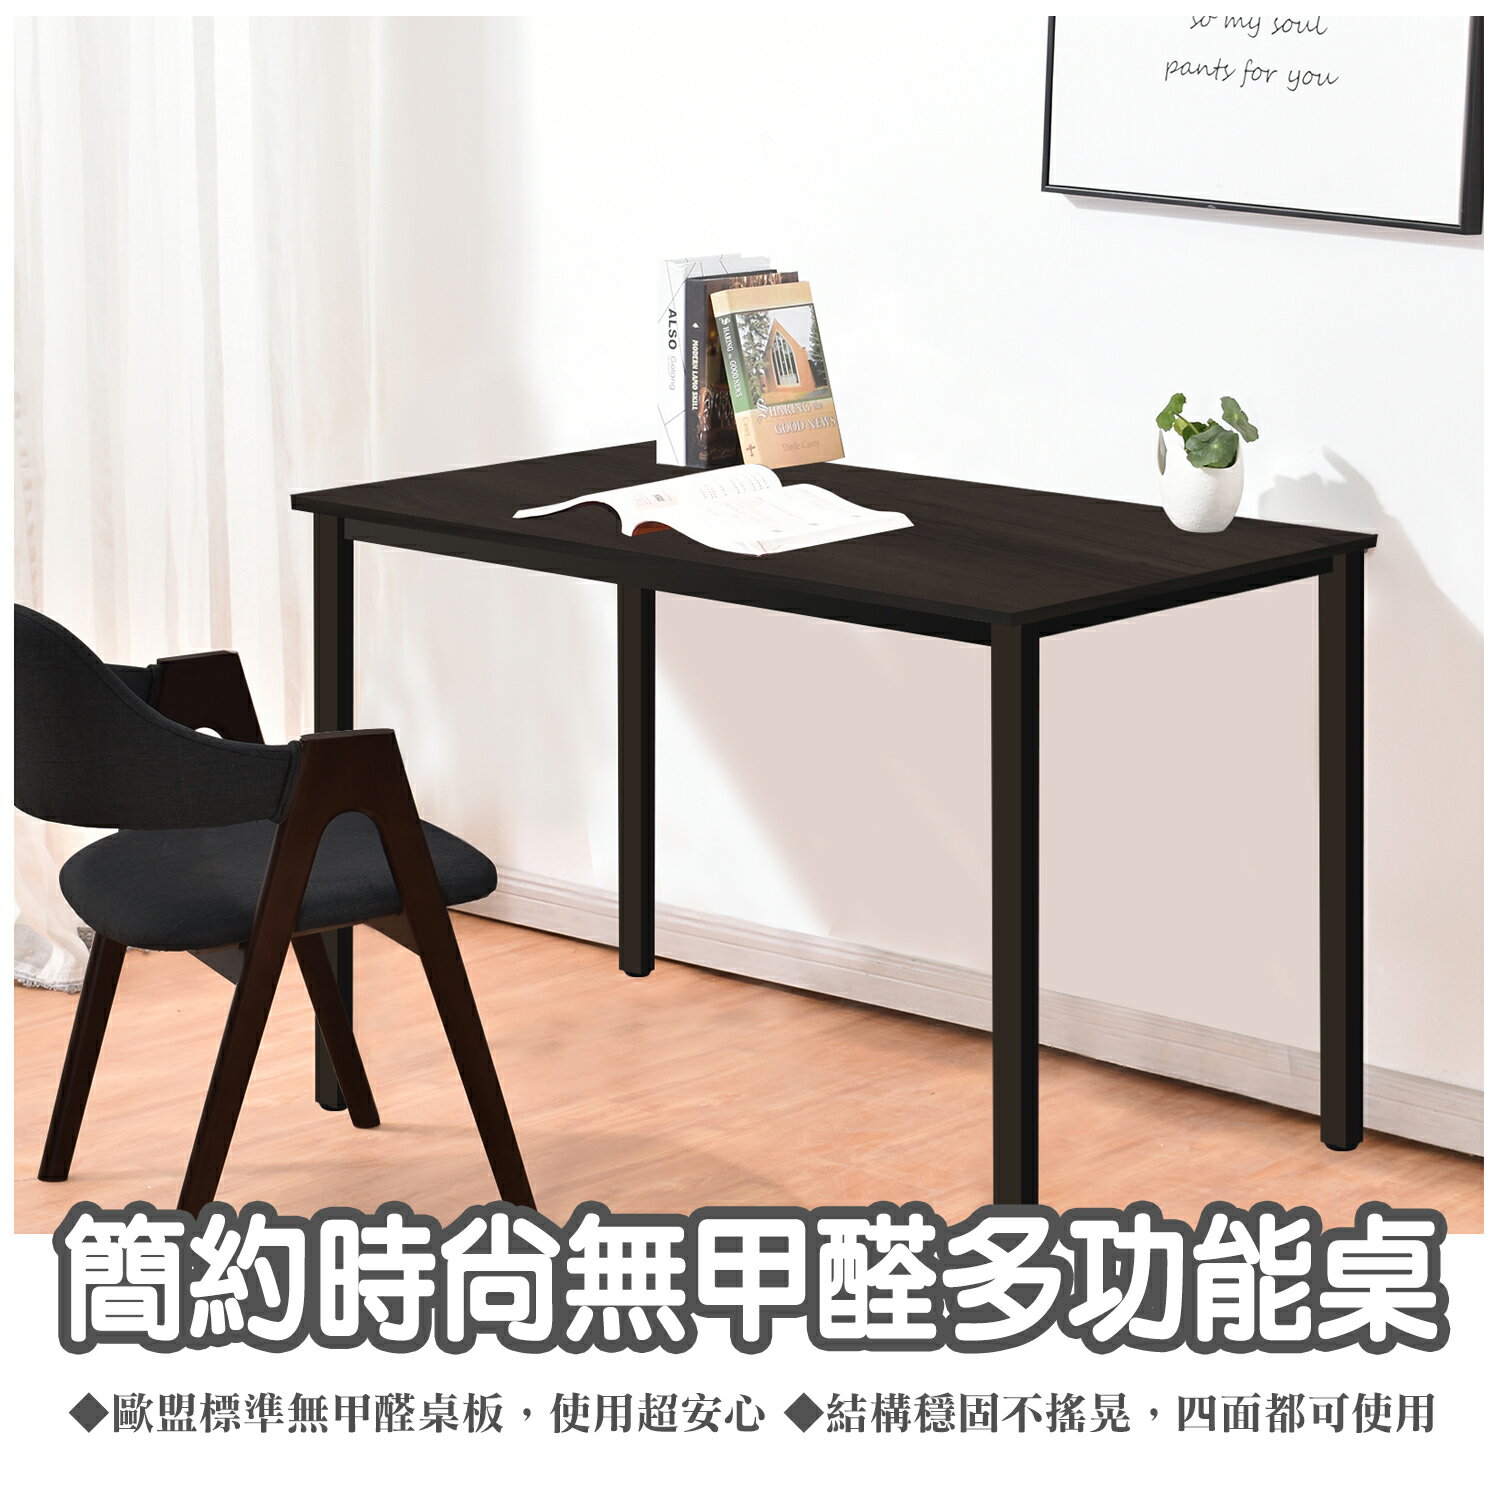 全球生活家-寬120cm簡約環保材質無甲醛多功能桌/電腦桌/餐桌/工作桌/書桌台灣製造TGL-1260(DWT)